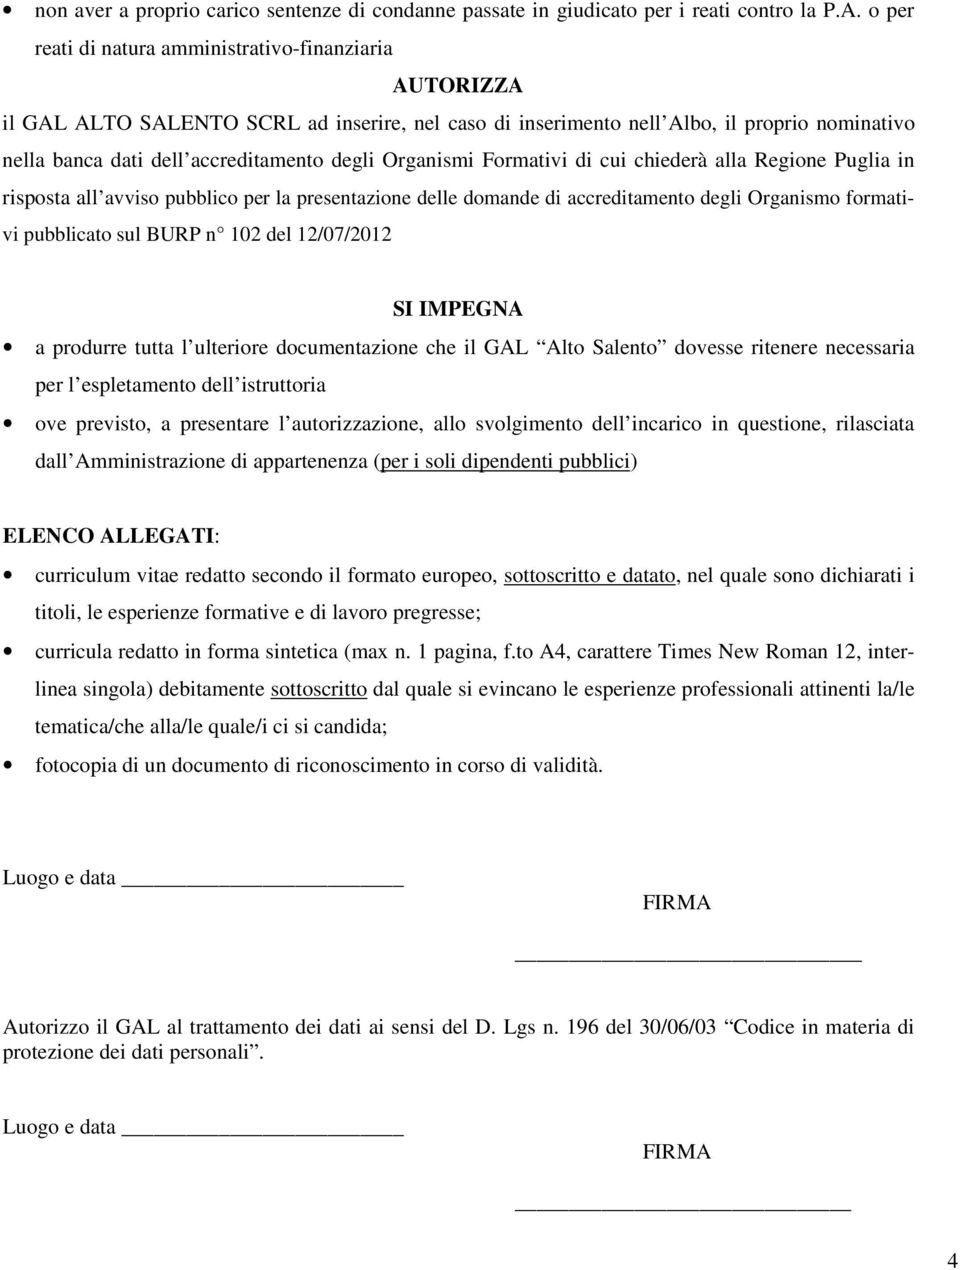 Organismi Formativi di cui chiederà alla Regione Puglia in risposta all avviso pubblico per la presentazione delle domande di accreditamento degli Organismo formativi pubblicato sul BURP n 102 del